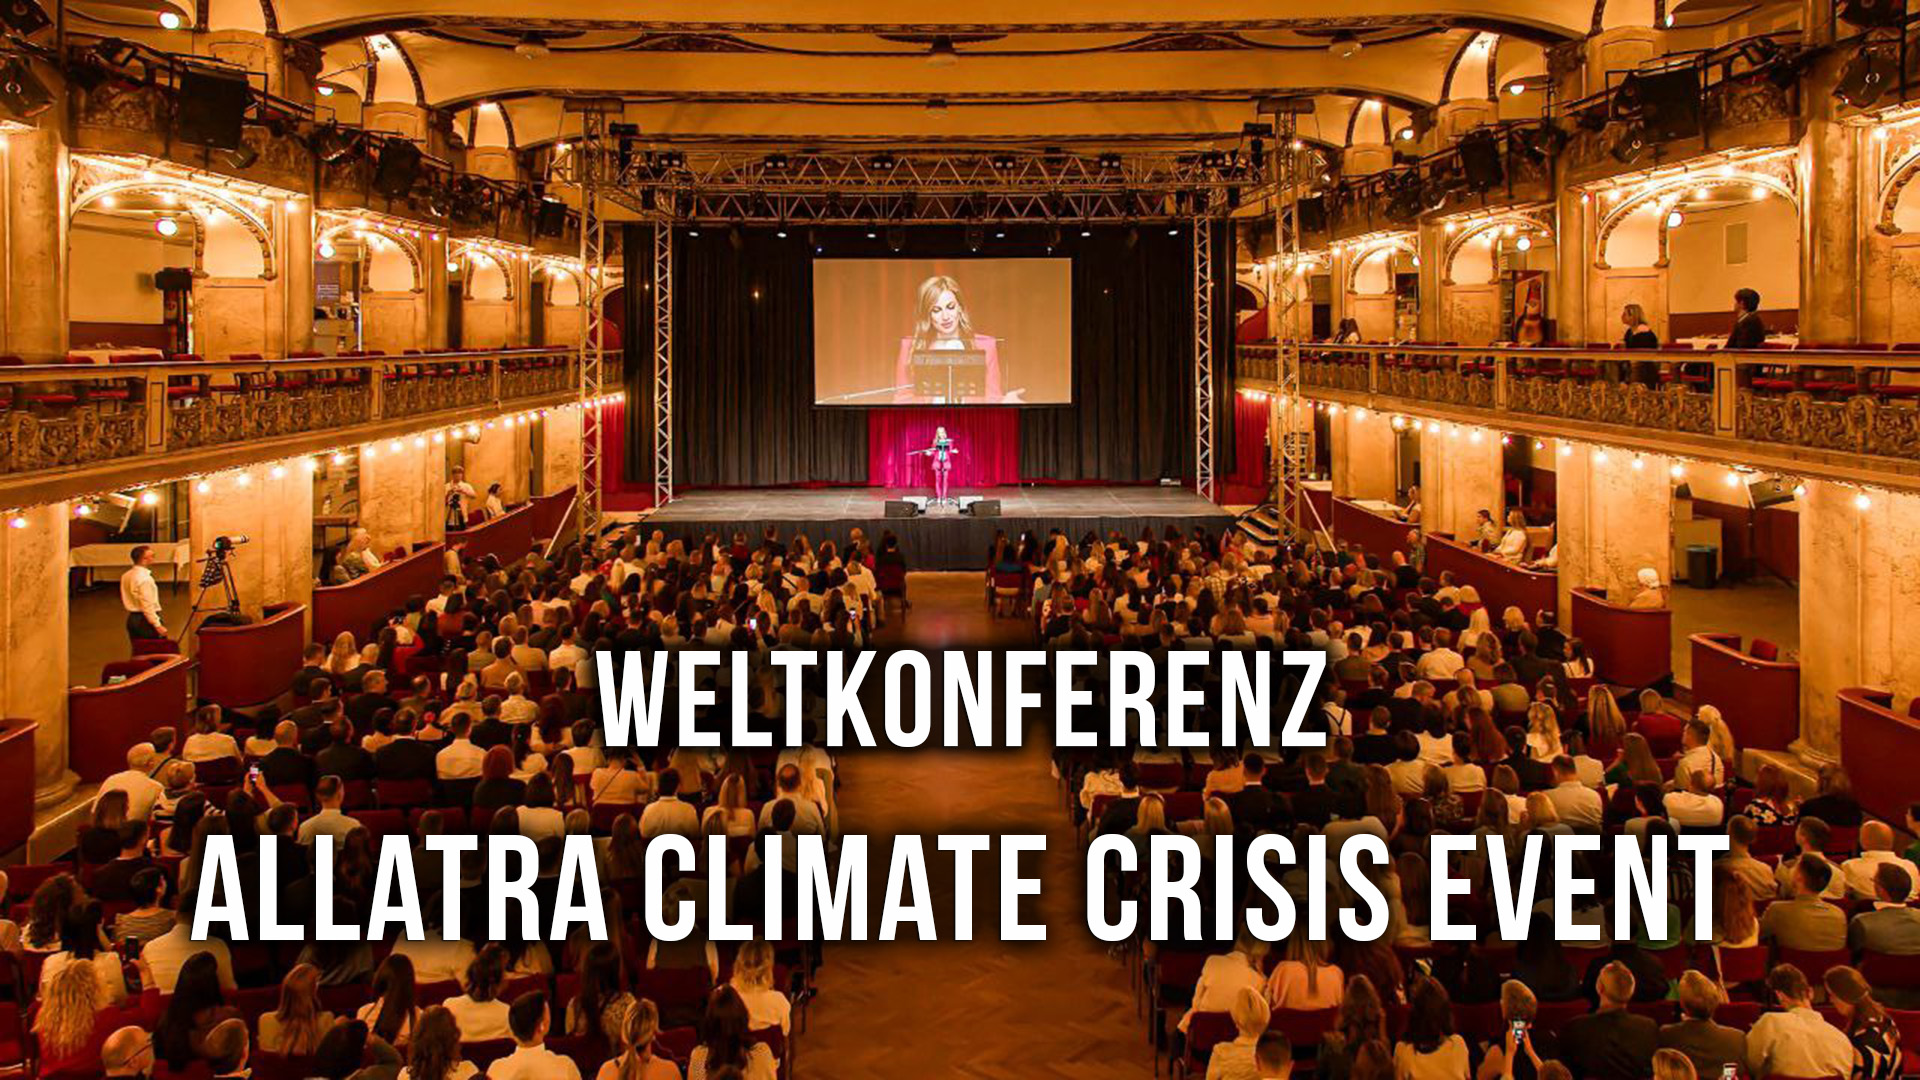 AllatRa und Kreative Gesellschaft: Vereint gegen Klimakrise | Weltkonferenz  "ALLATRA CLIMATE CRISIS EVENT"